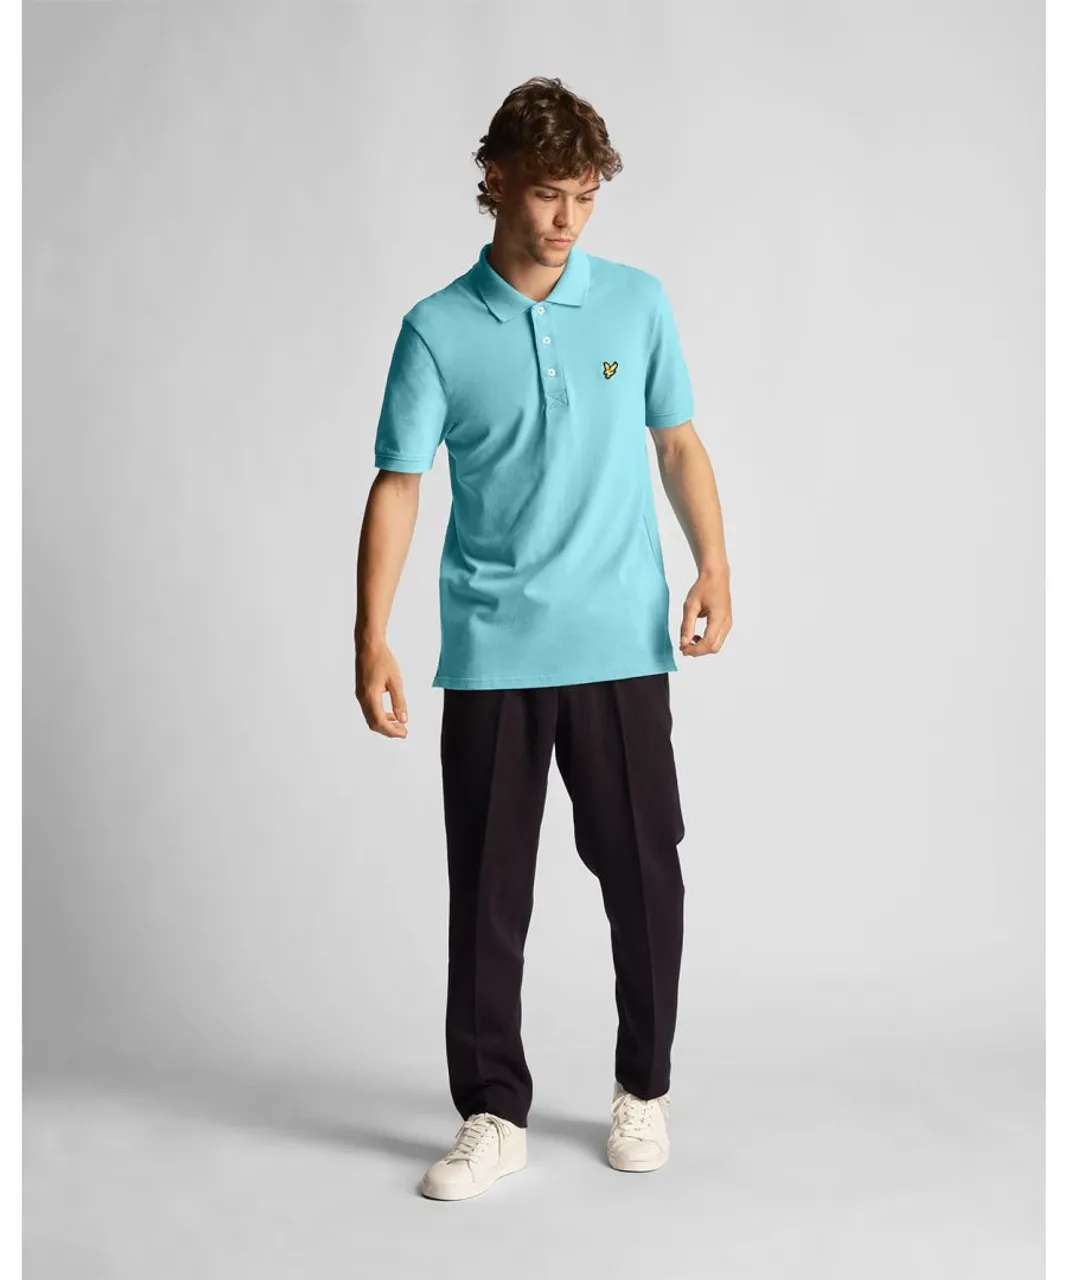 Lyle & Scott Mens Plain Polo Shirt in Blue Cotton